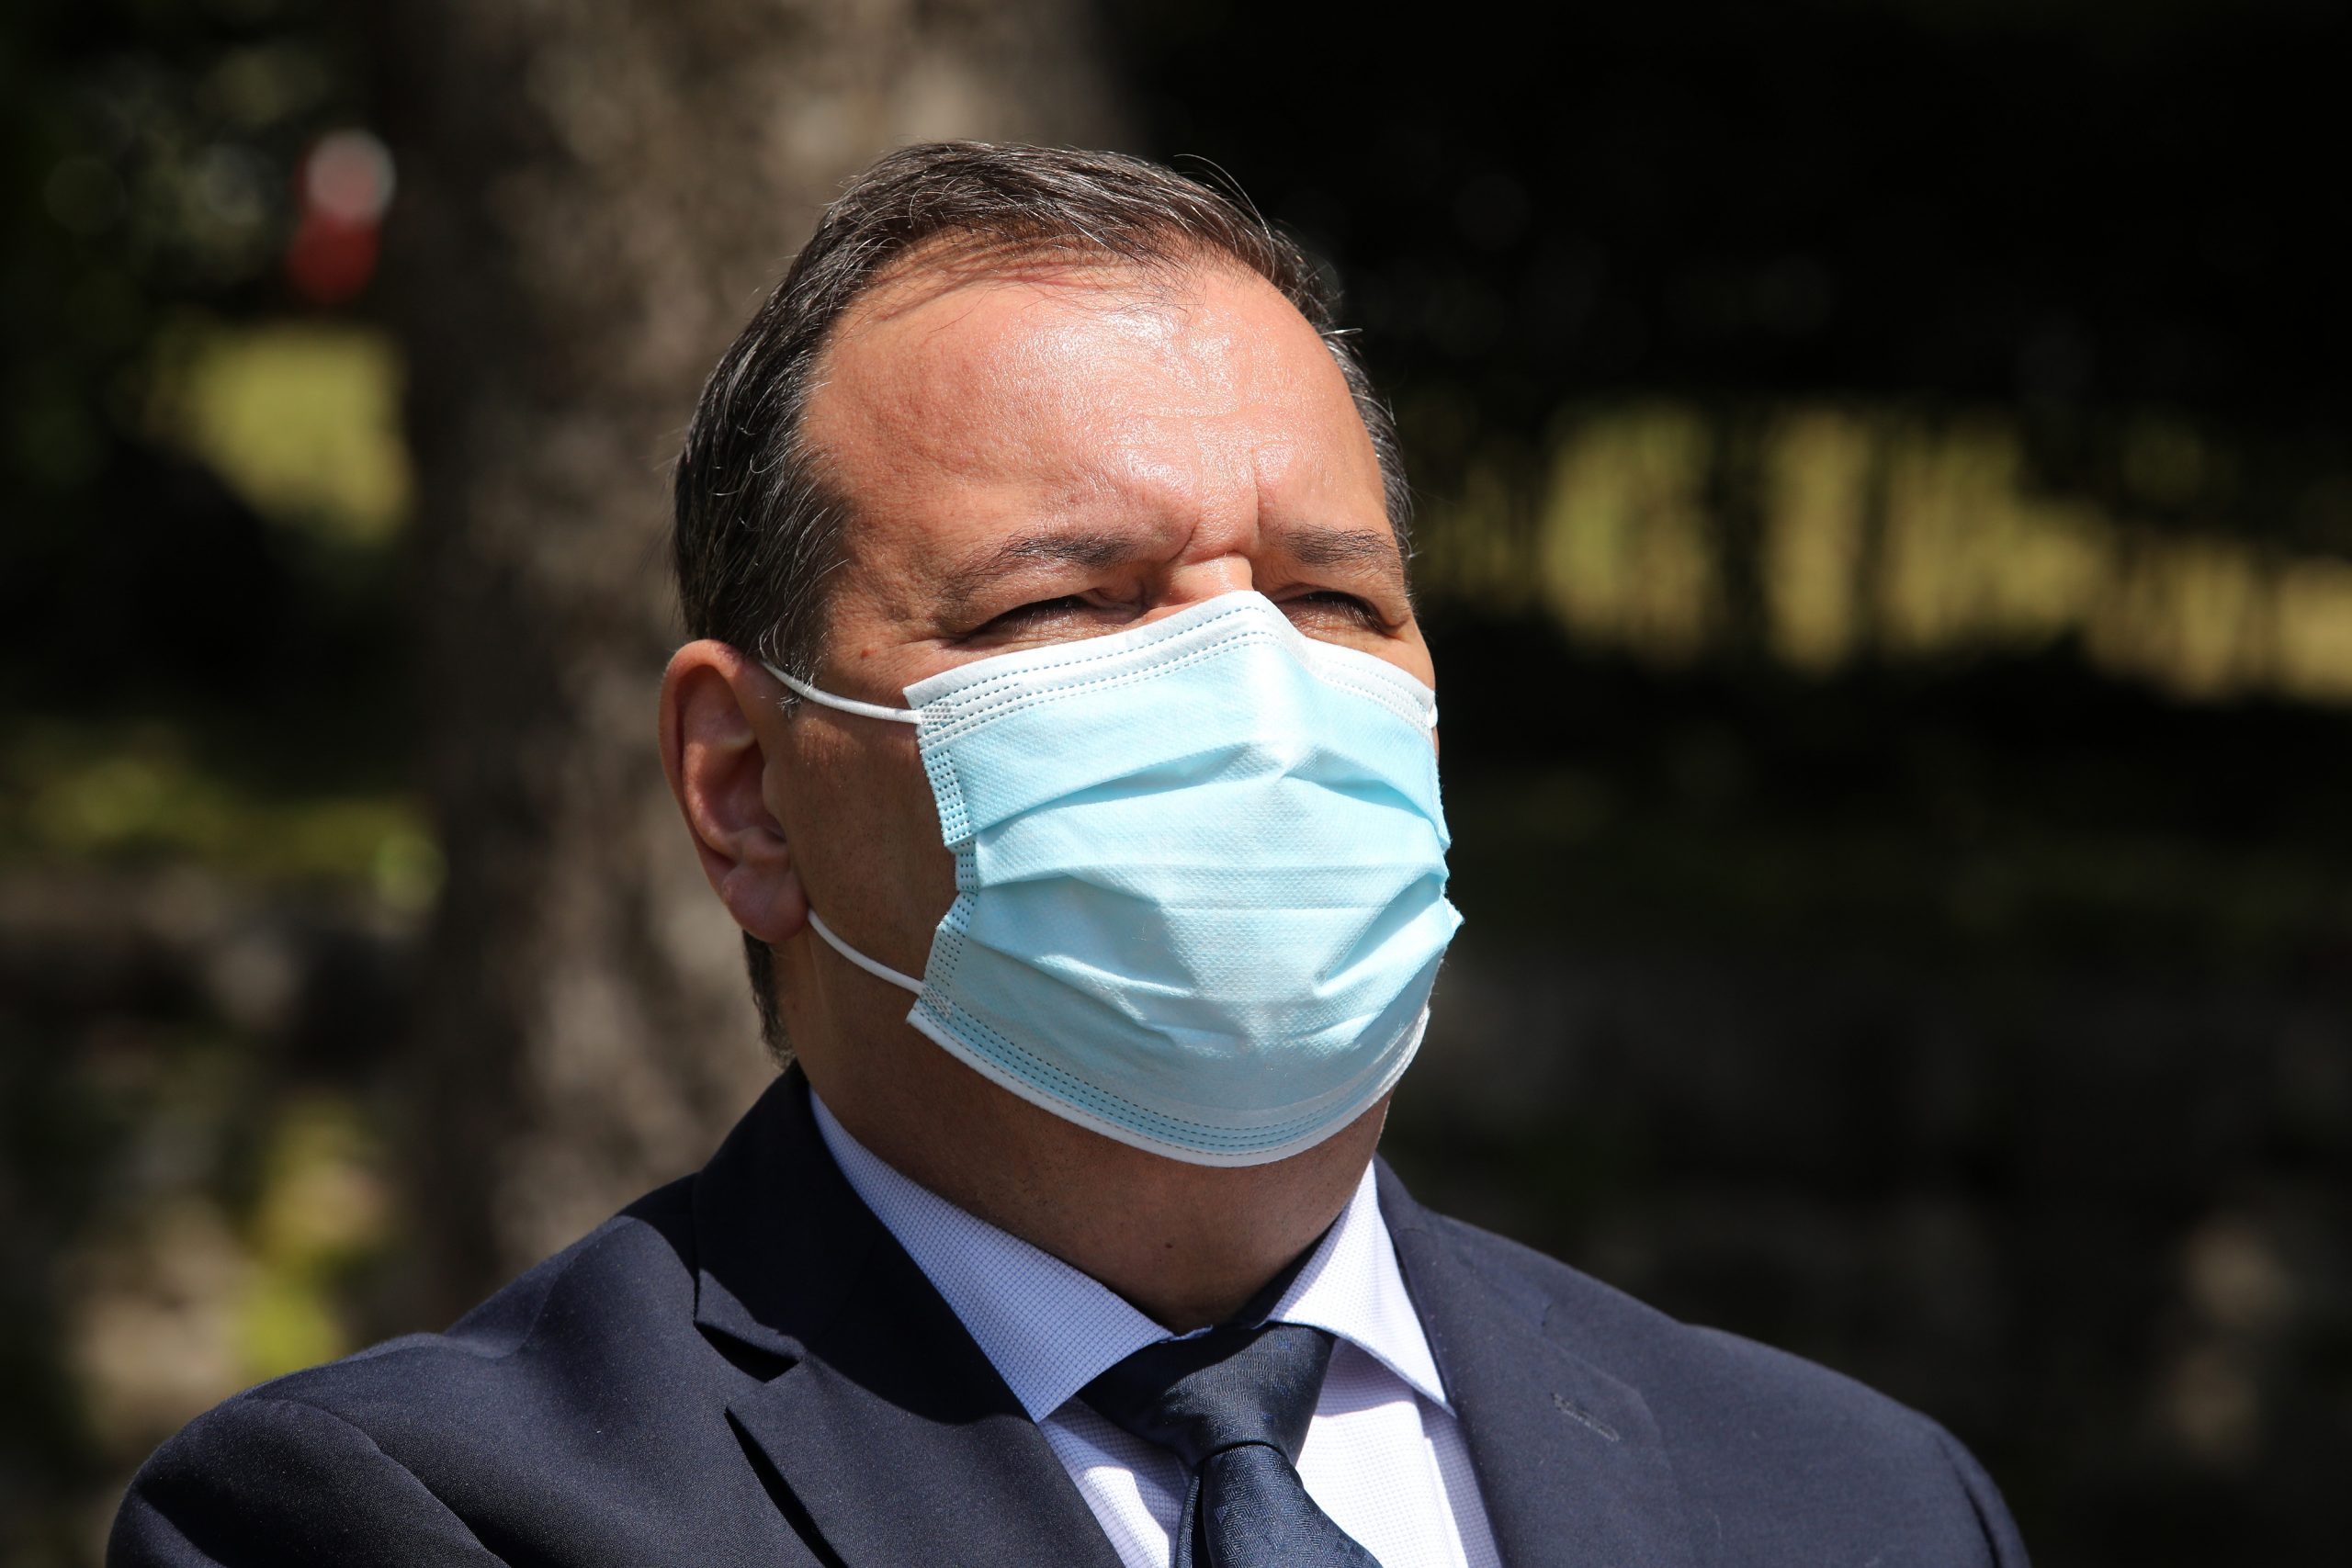 17.04.2021., Rijeka - Ministar zdravstva Vili Beros u posjetu KBC-u Rijeka. Photo: Goran Kovacic/PIXSELL